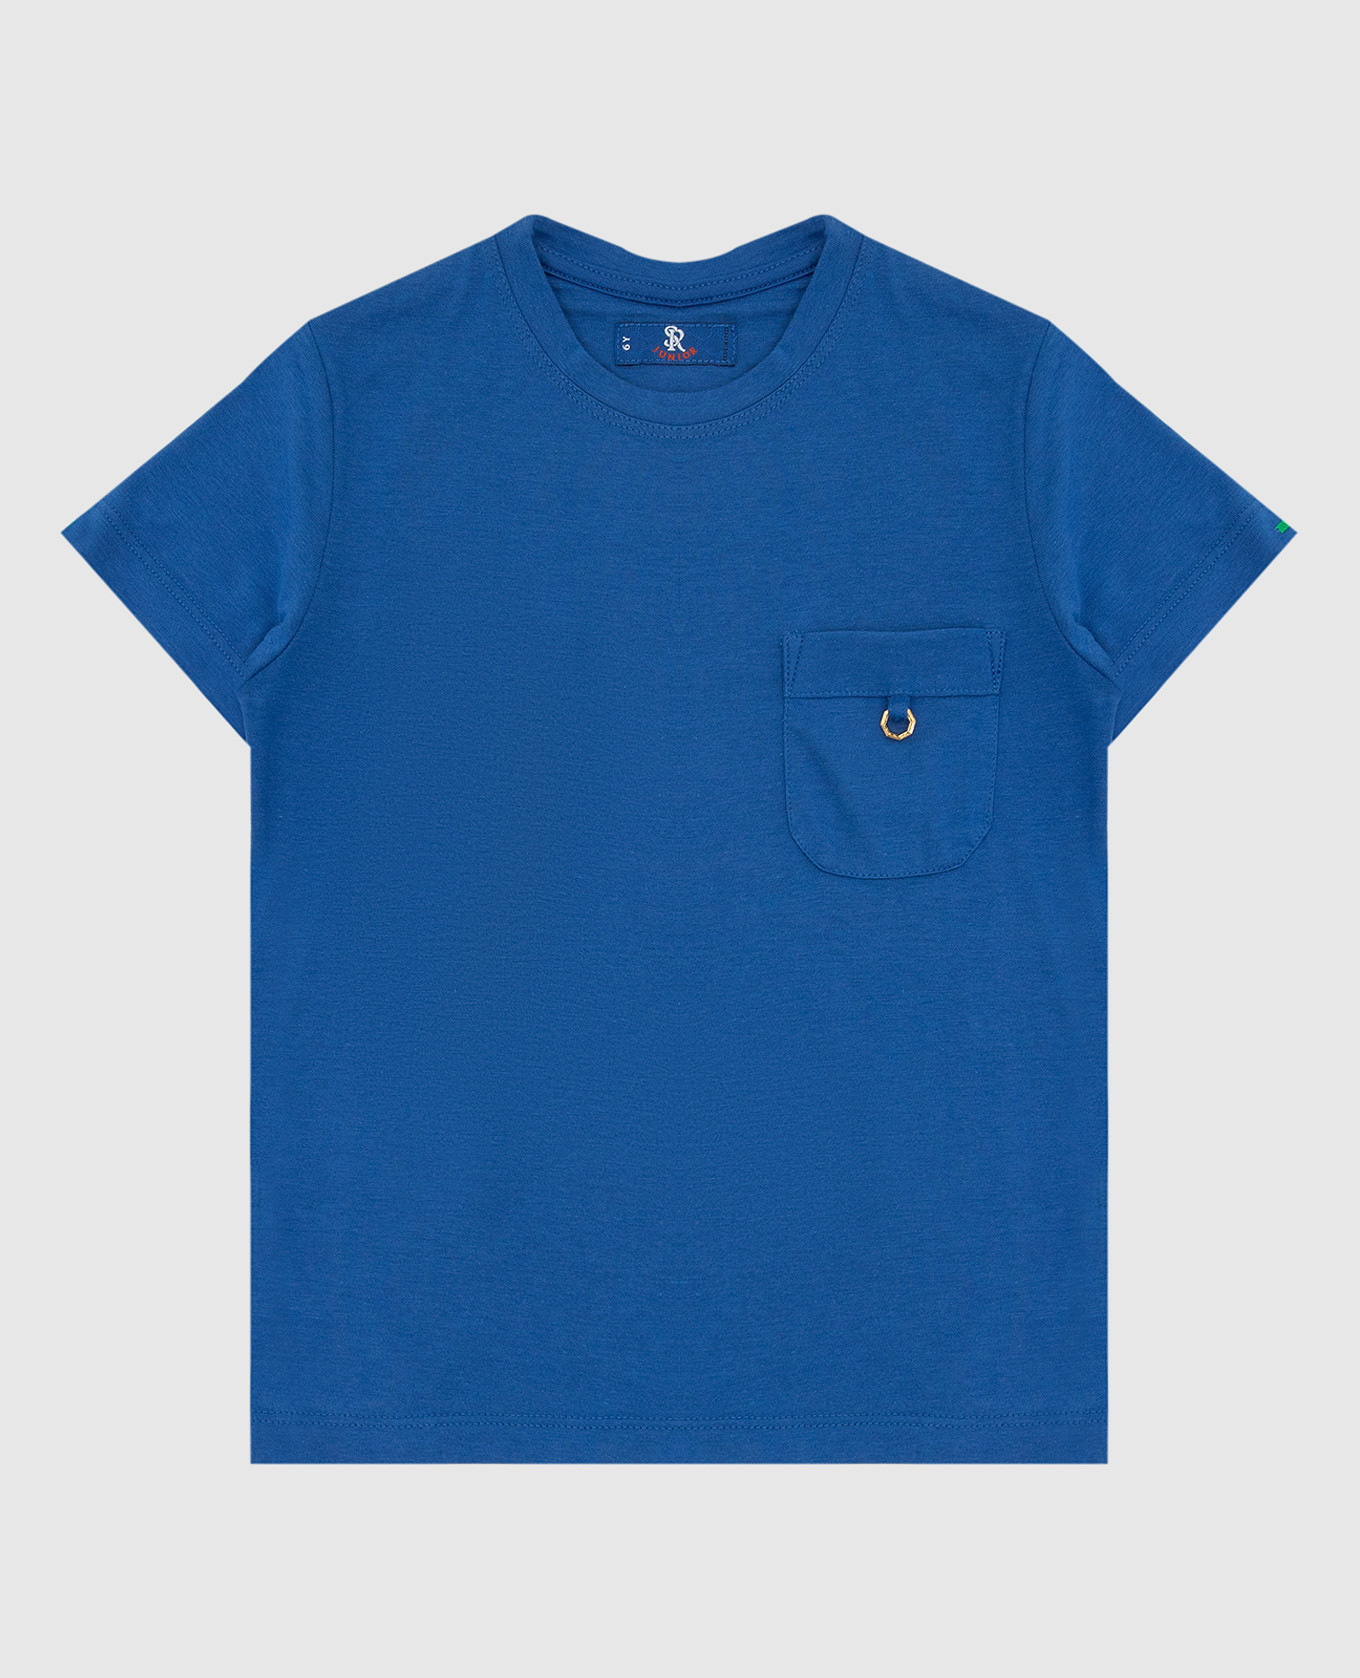 Children's blue T-shirt